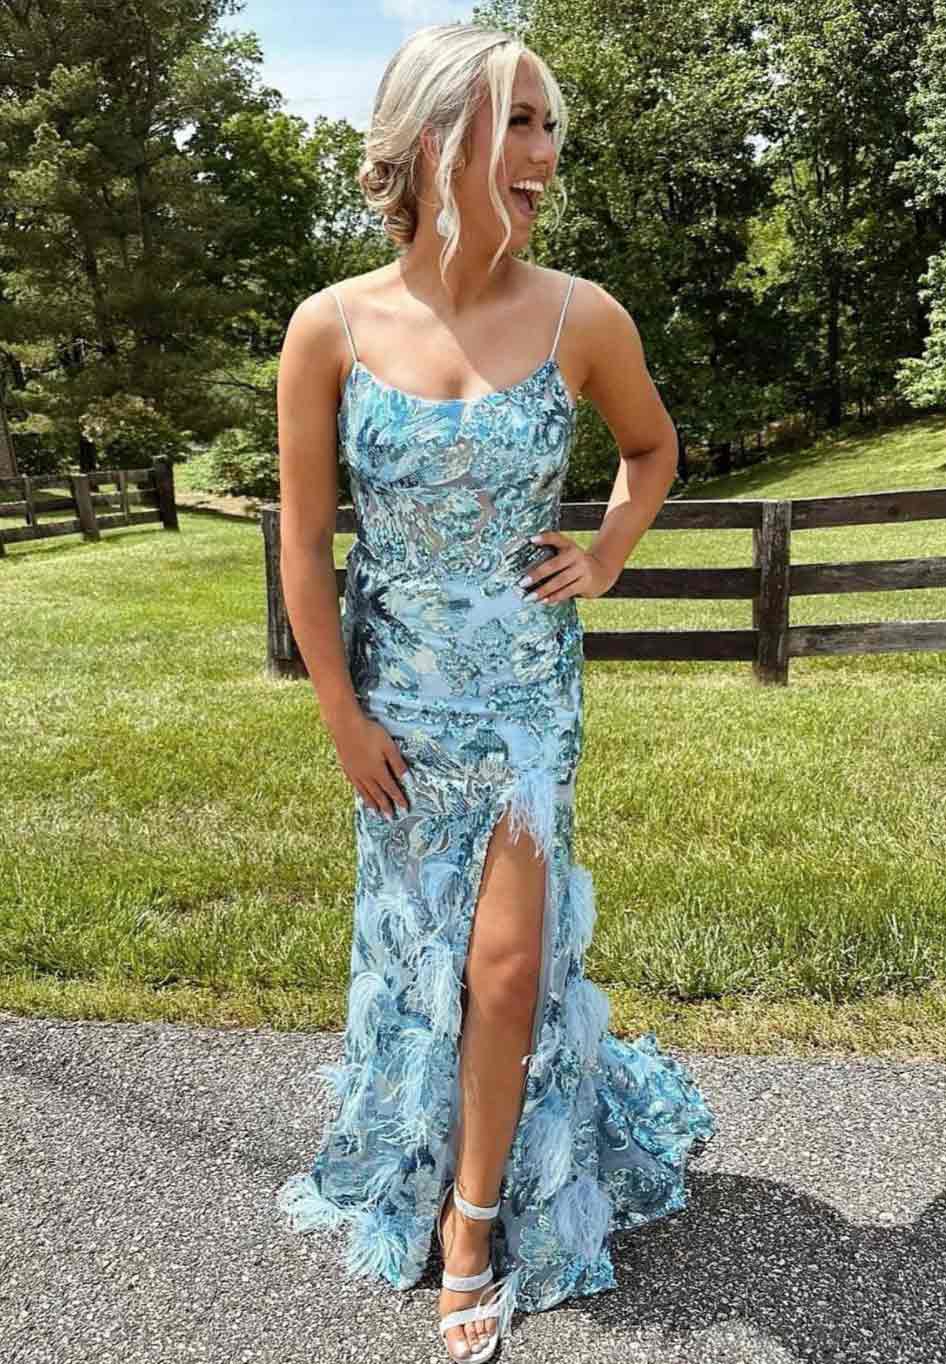 Model wearing a blue dress